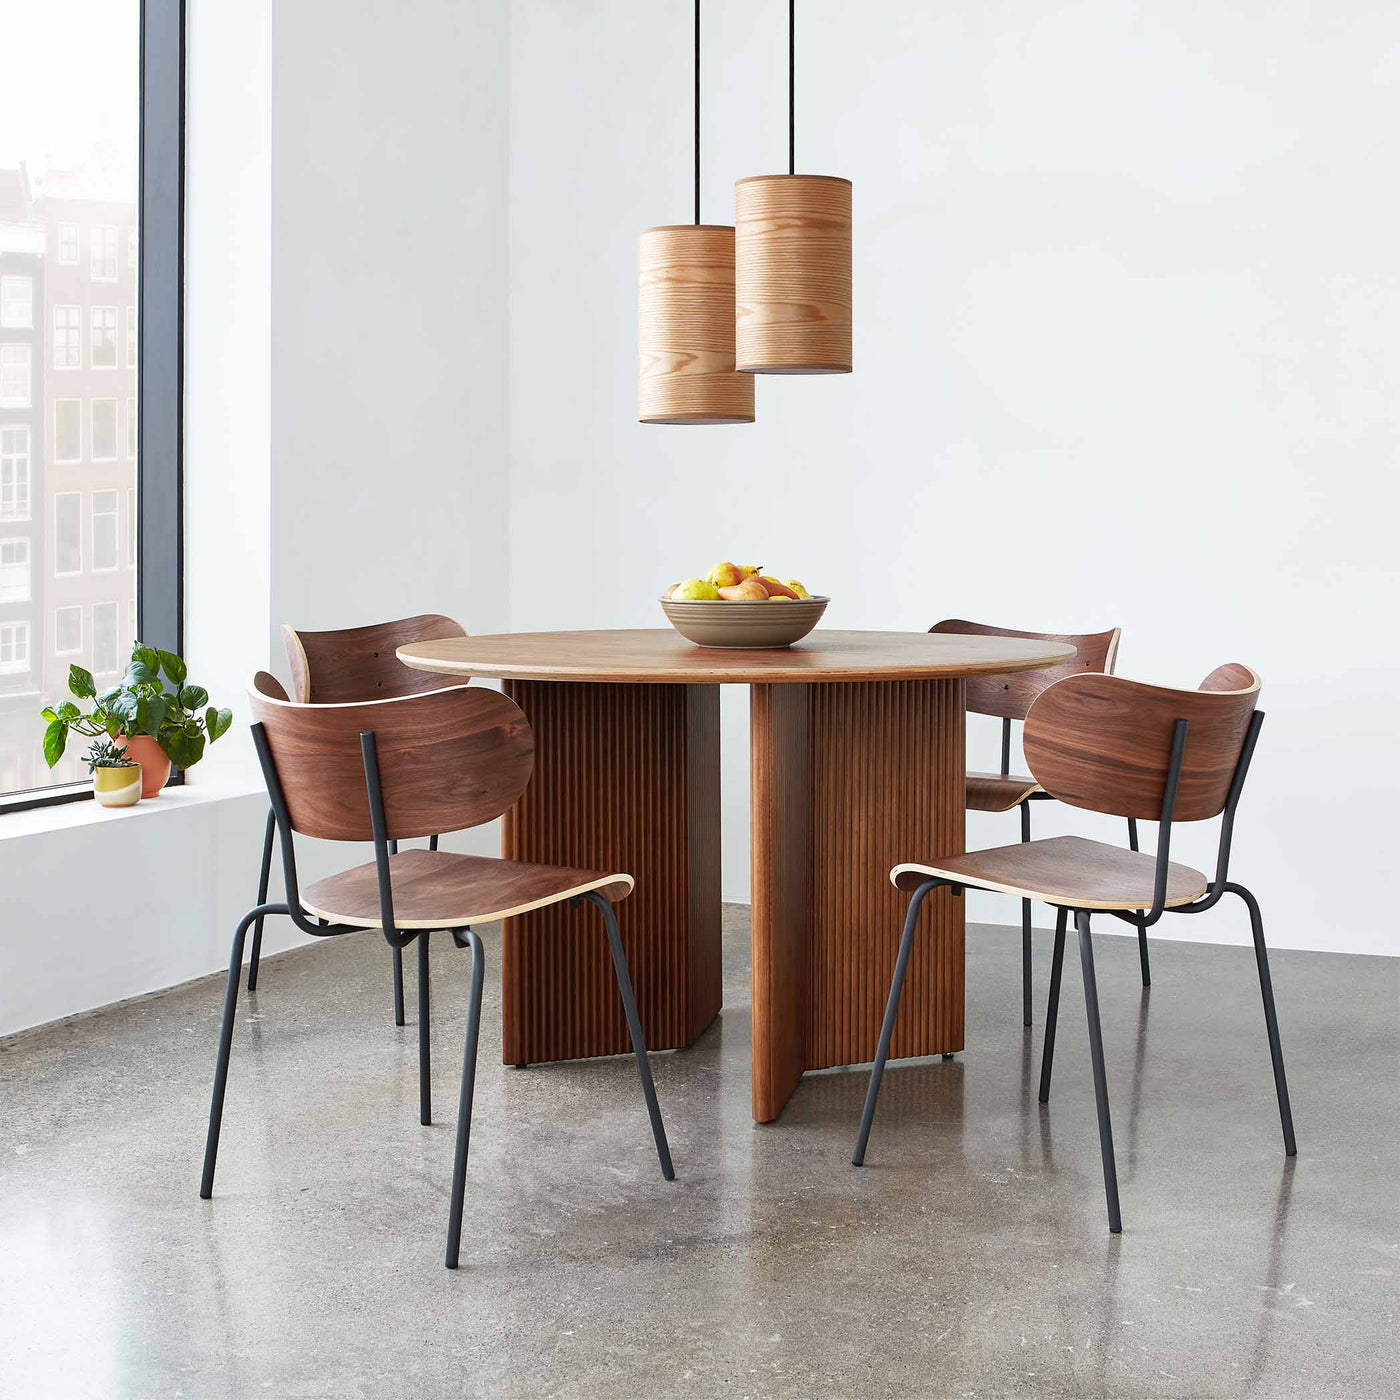 Découvrez l'élégance de la table Atwell de Gus* Modern, avec sa base à double chevron et ses détails festonnés en bois massif, apportant une touche d'authenticité et d'élégance à votre intérieur.